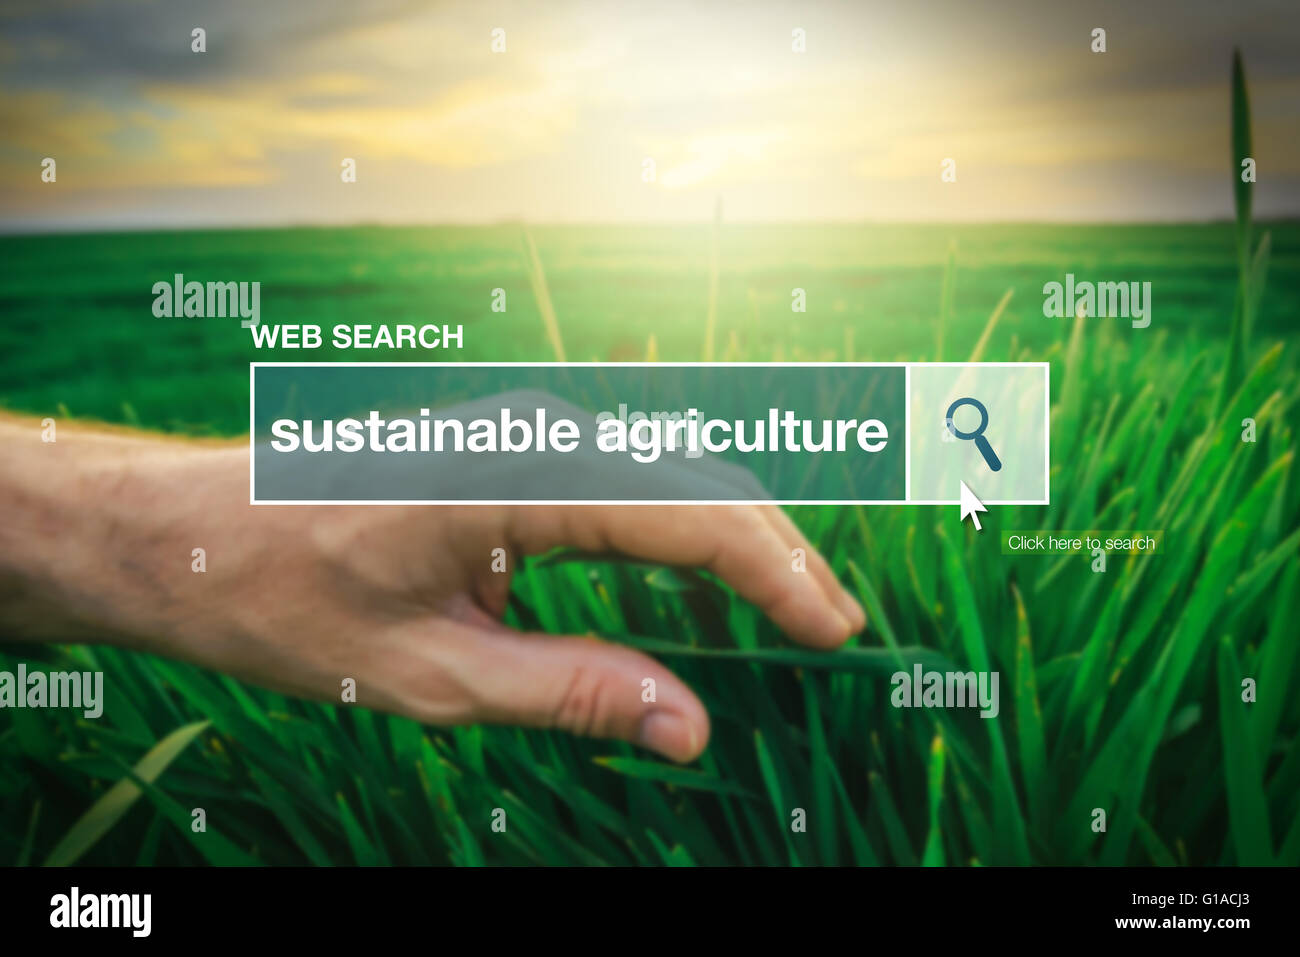 Agricoltura sostenibile - Web search bar Termine del glossario su internet Foto Stock